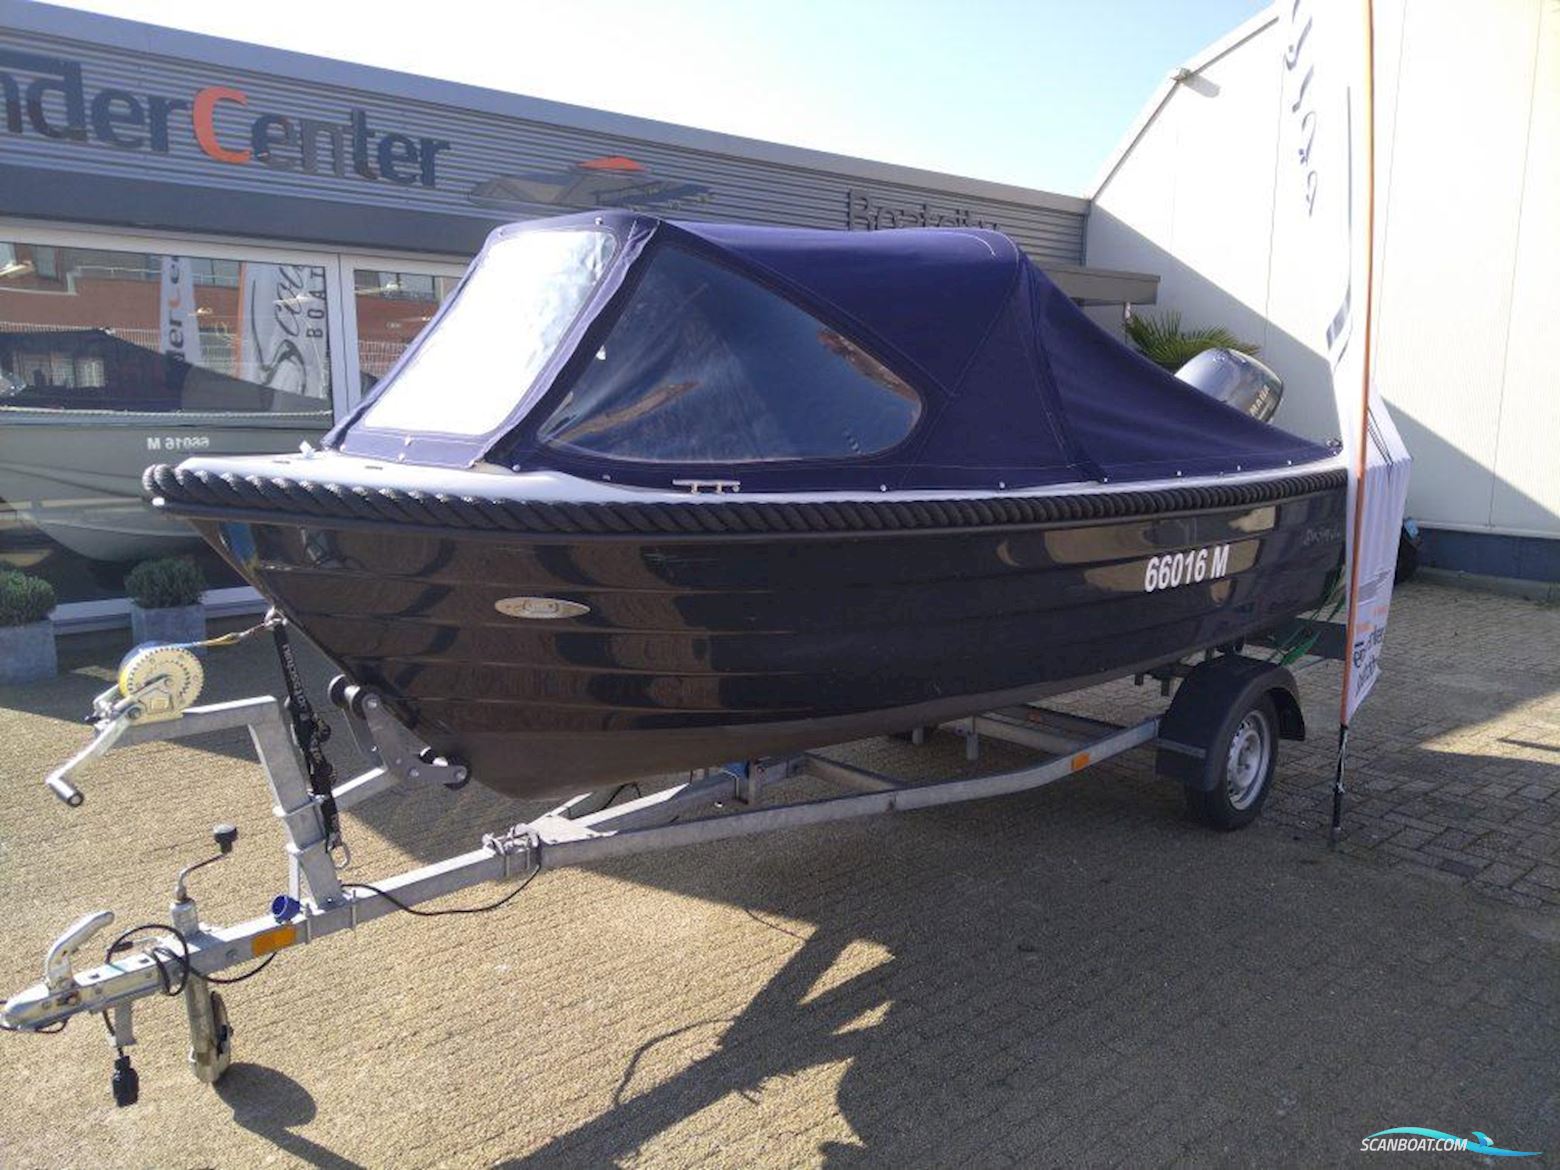 Blue Sloep 480XL Motorbåt 2013, med Yamaha motor, Holland